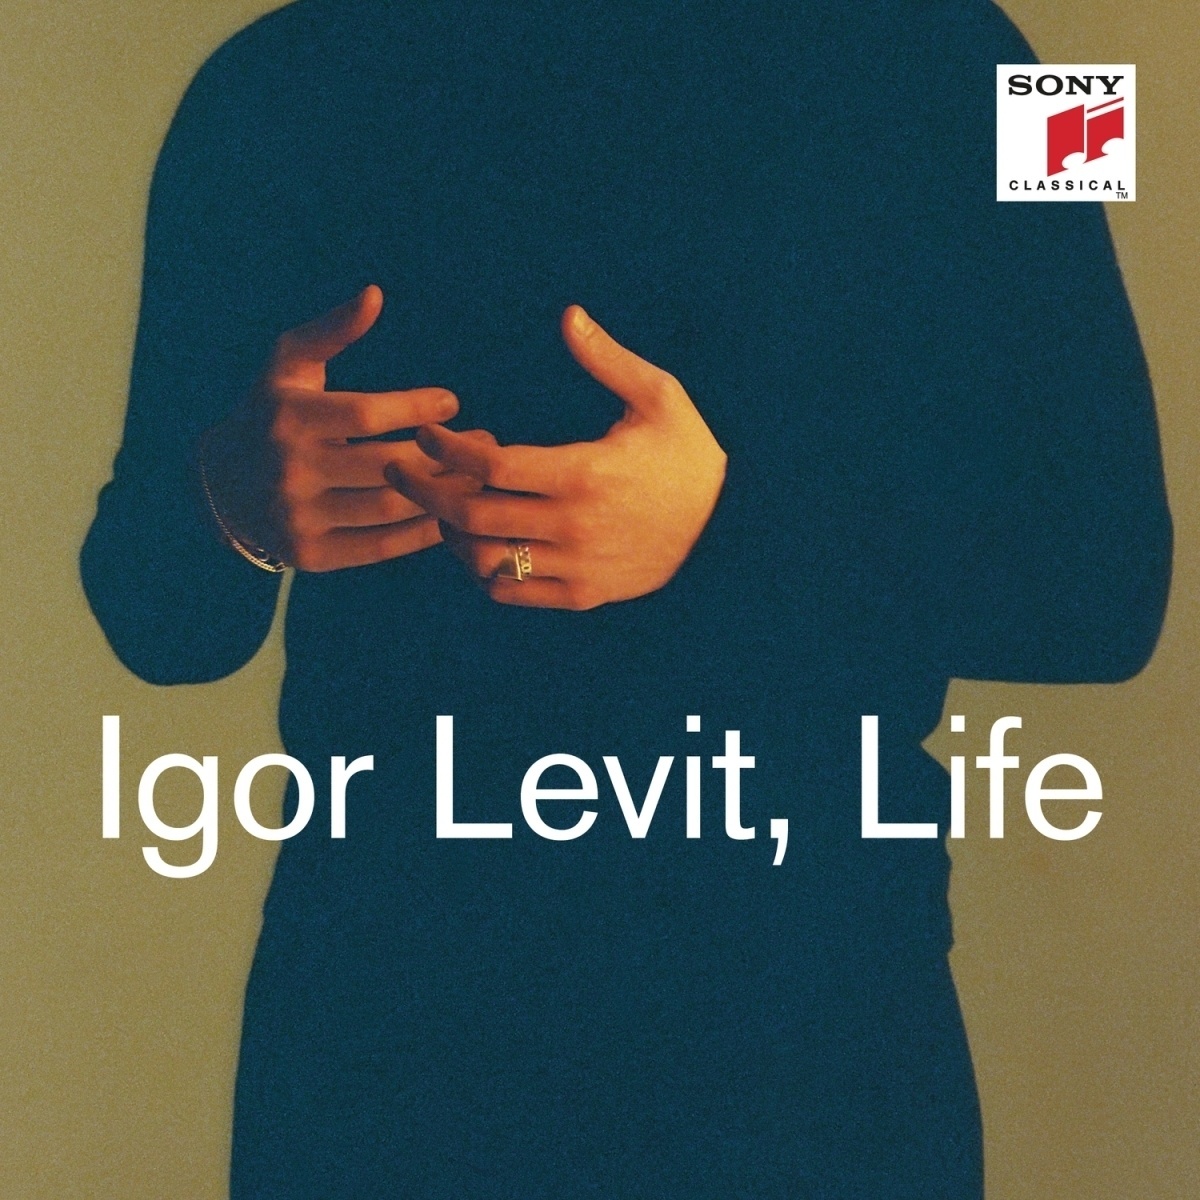 Life - Igor Levit. (CD)